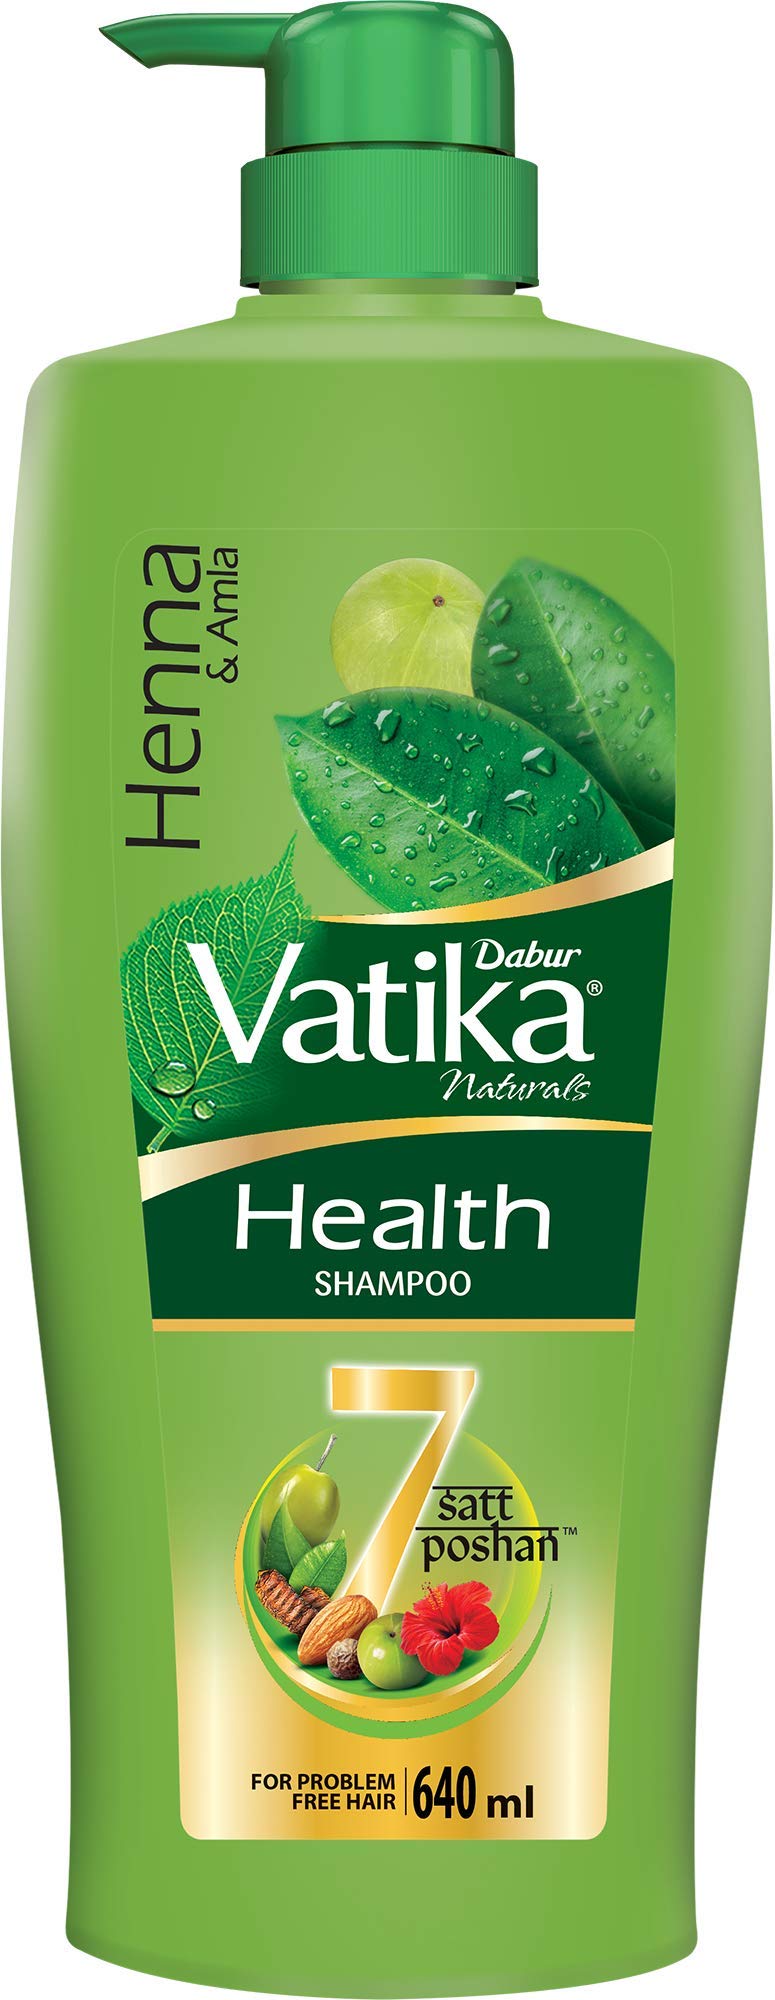 Vatika Health Shampoo HENNA & AMLA, Dabur (Ватика шампунь для оздоровления волос ХНА И АМЛА, Дабур), с дозатором, 640 мл.